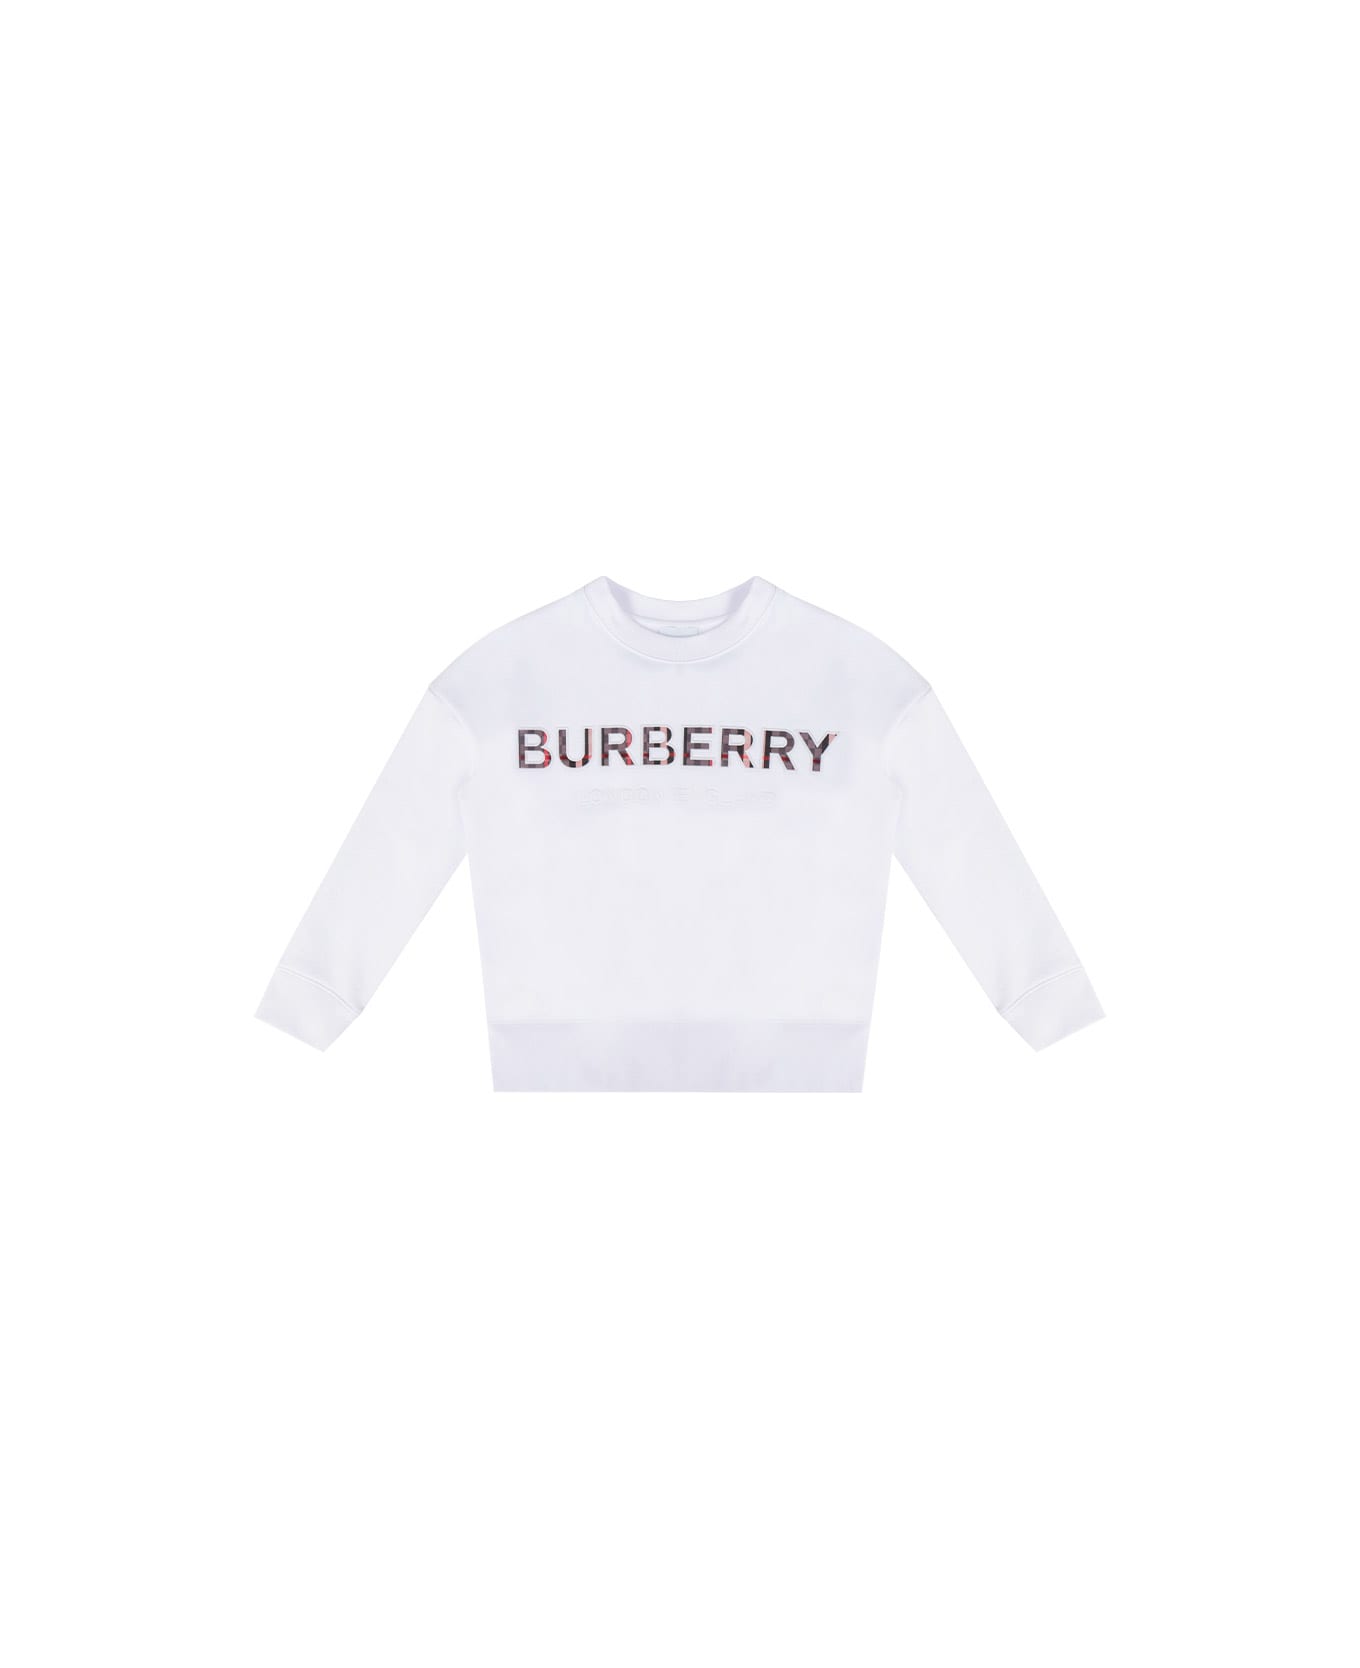 Burberry Eugene Sweatshirt For Boys - White